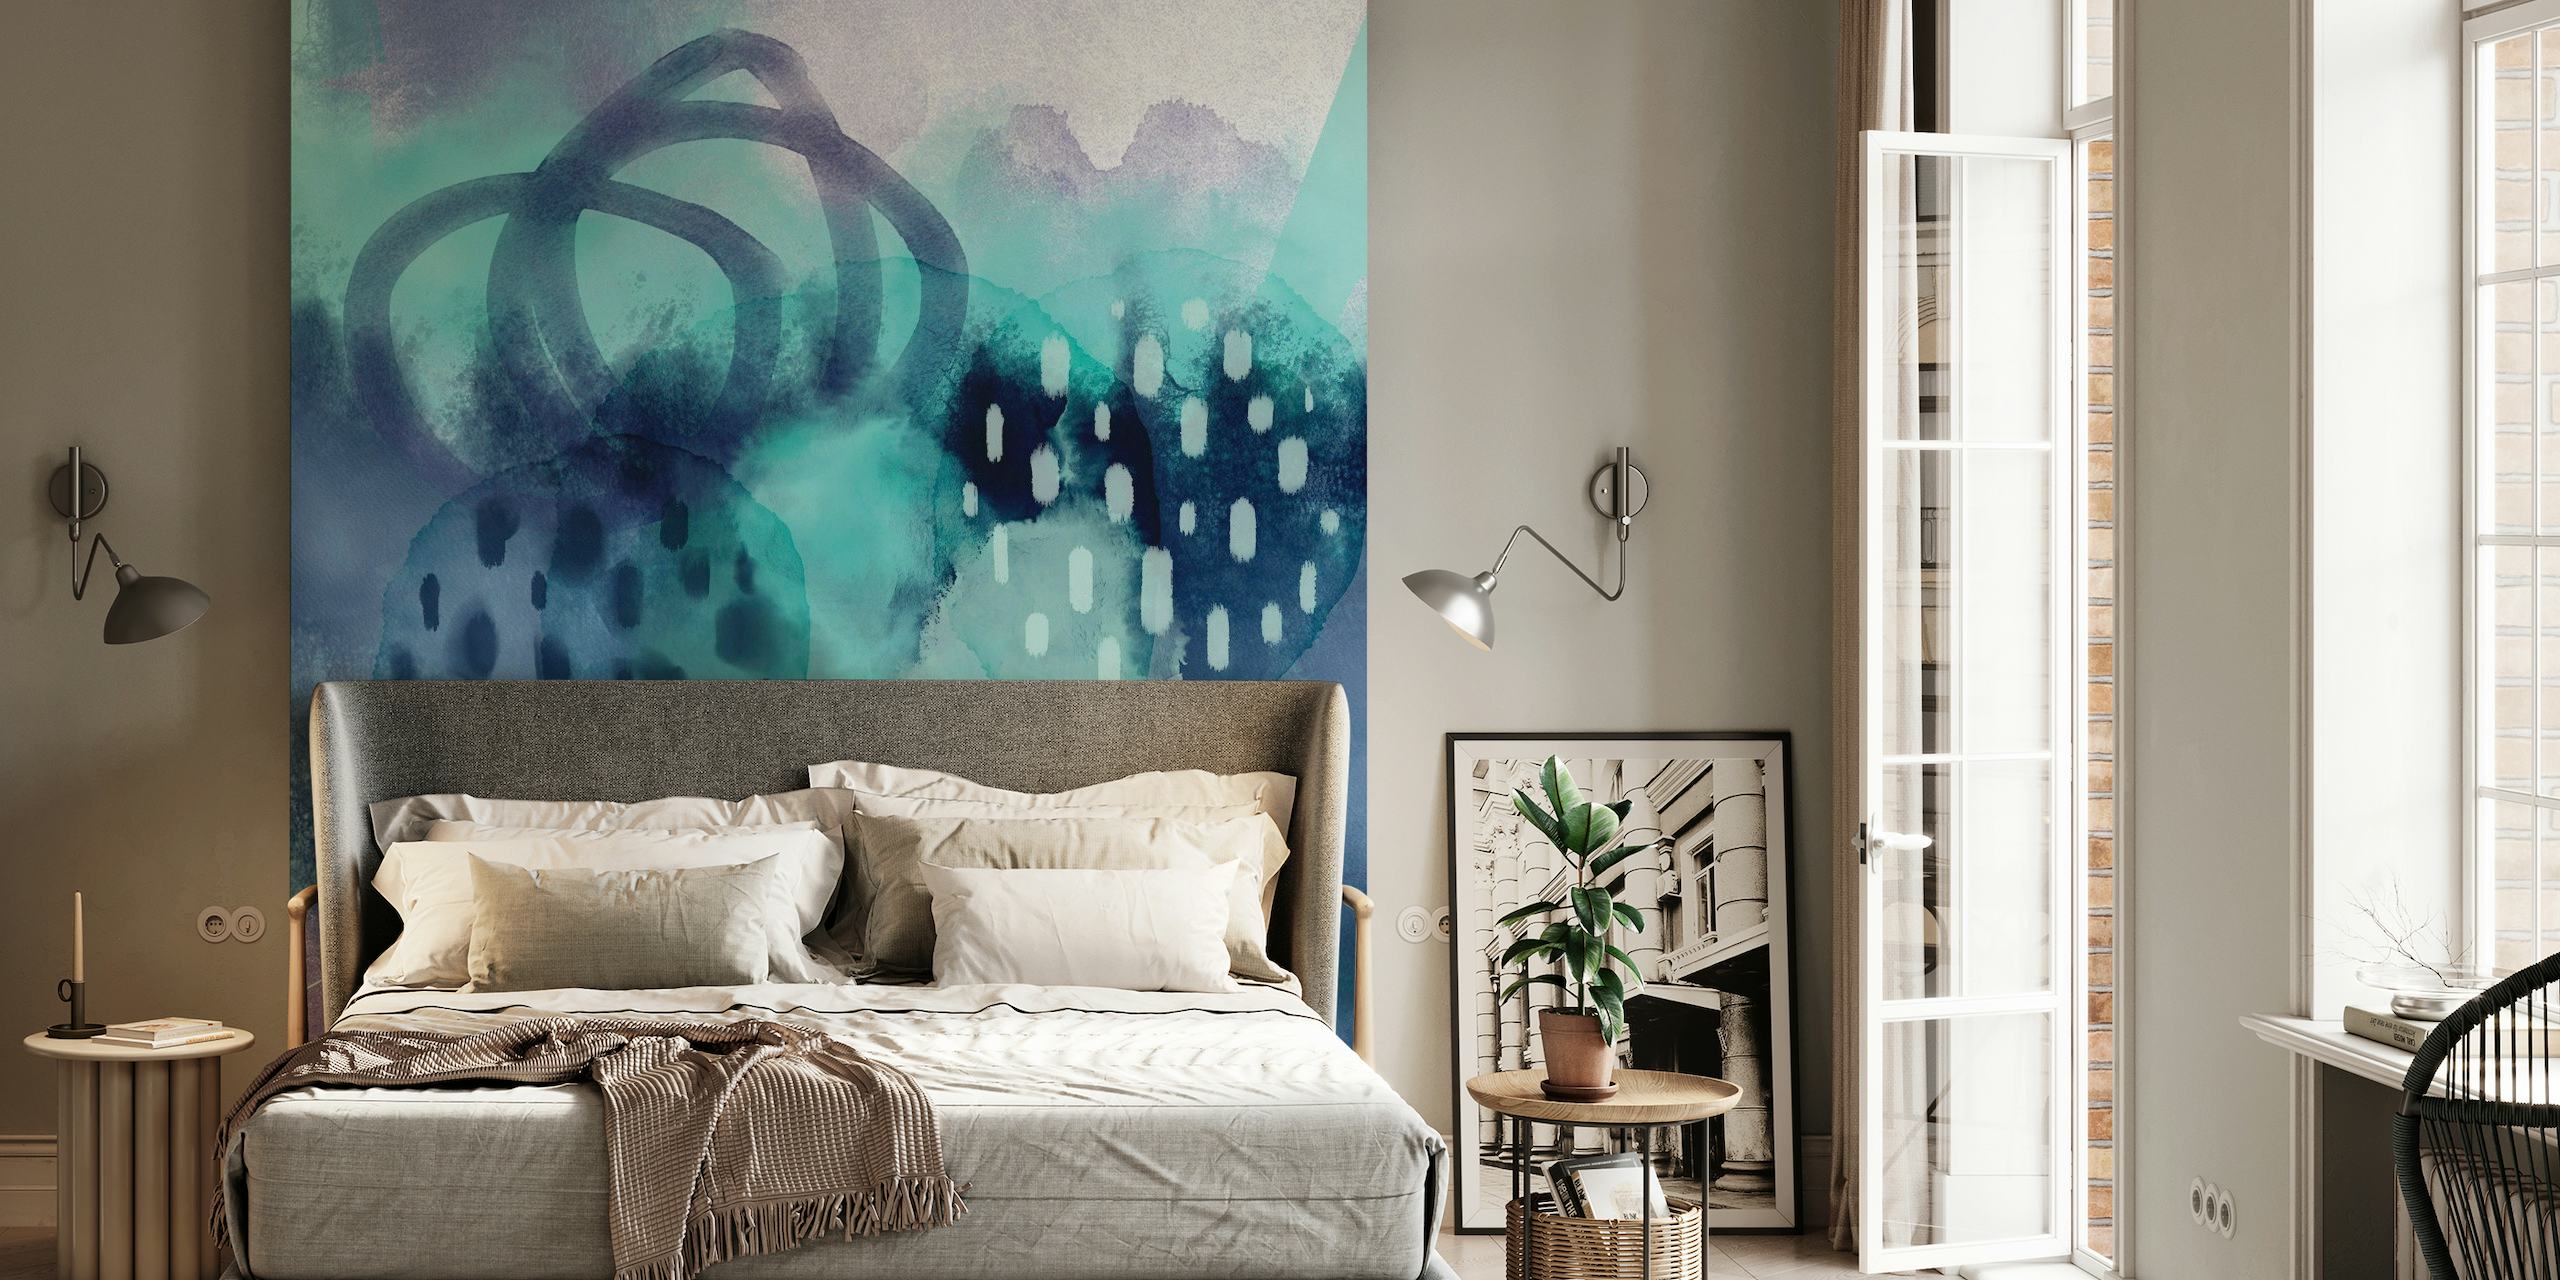 Abstrakt aquablå akvarellveggmaleri med eteriske teksturer og penselstrøk